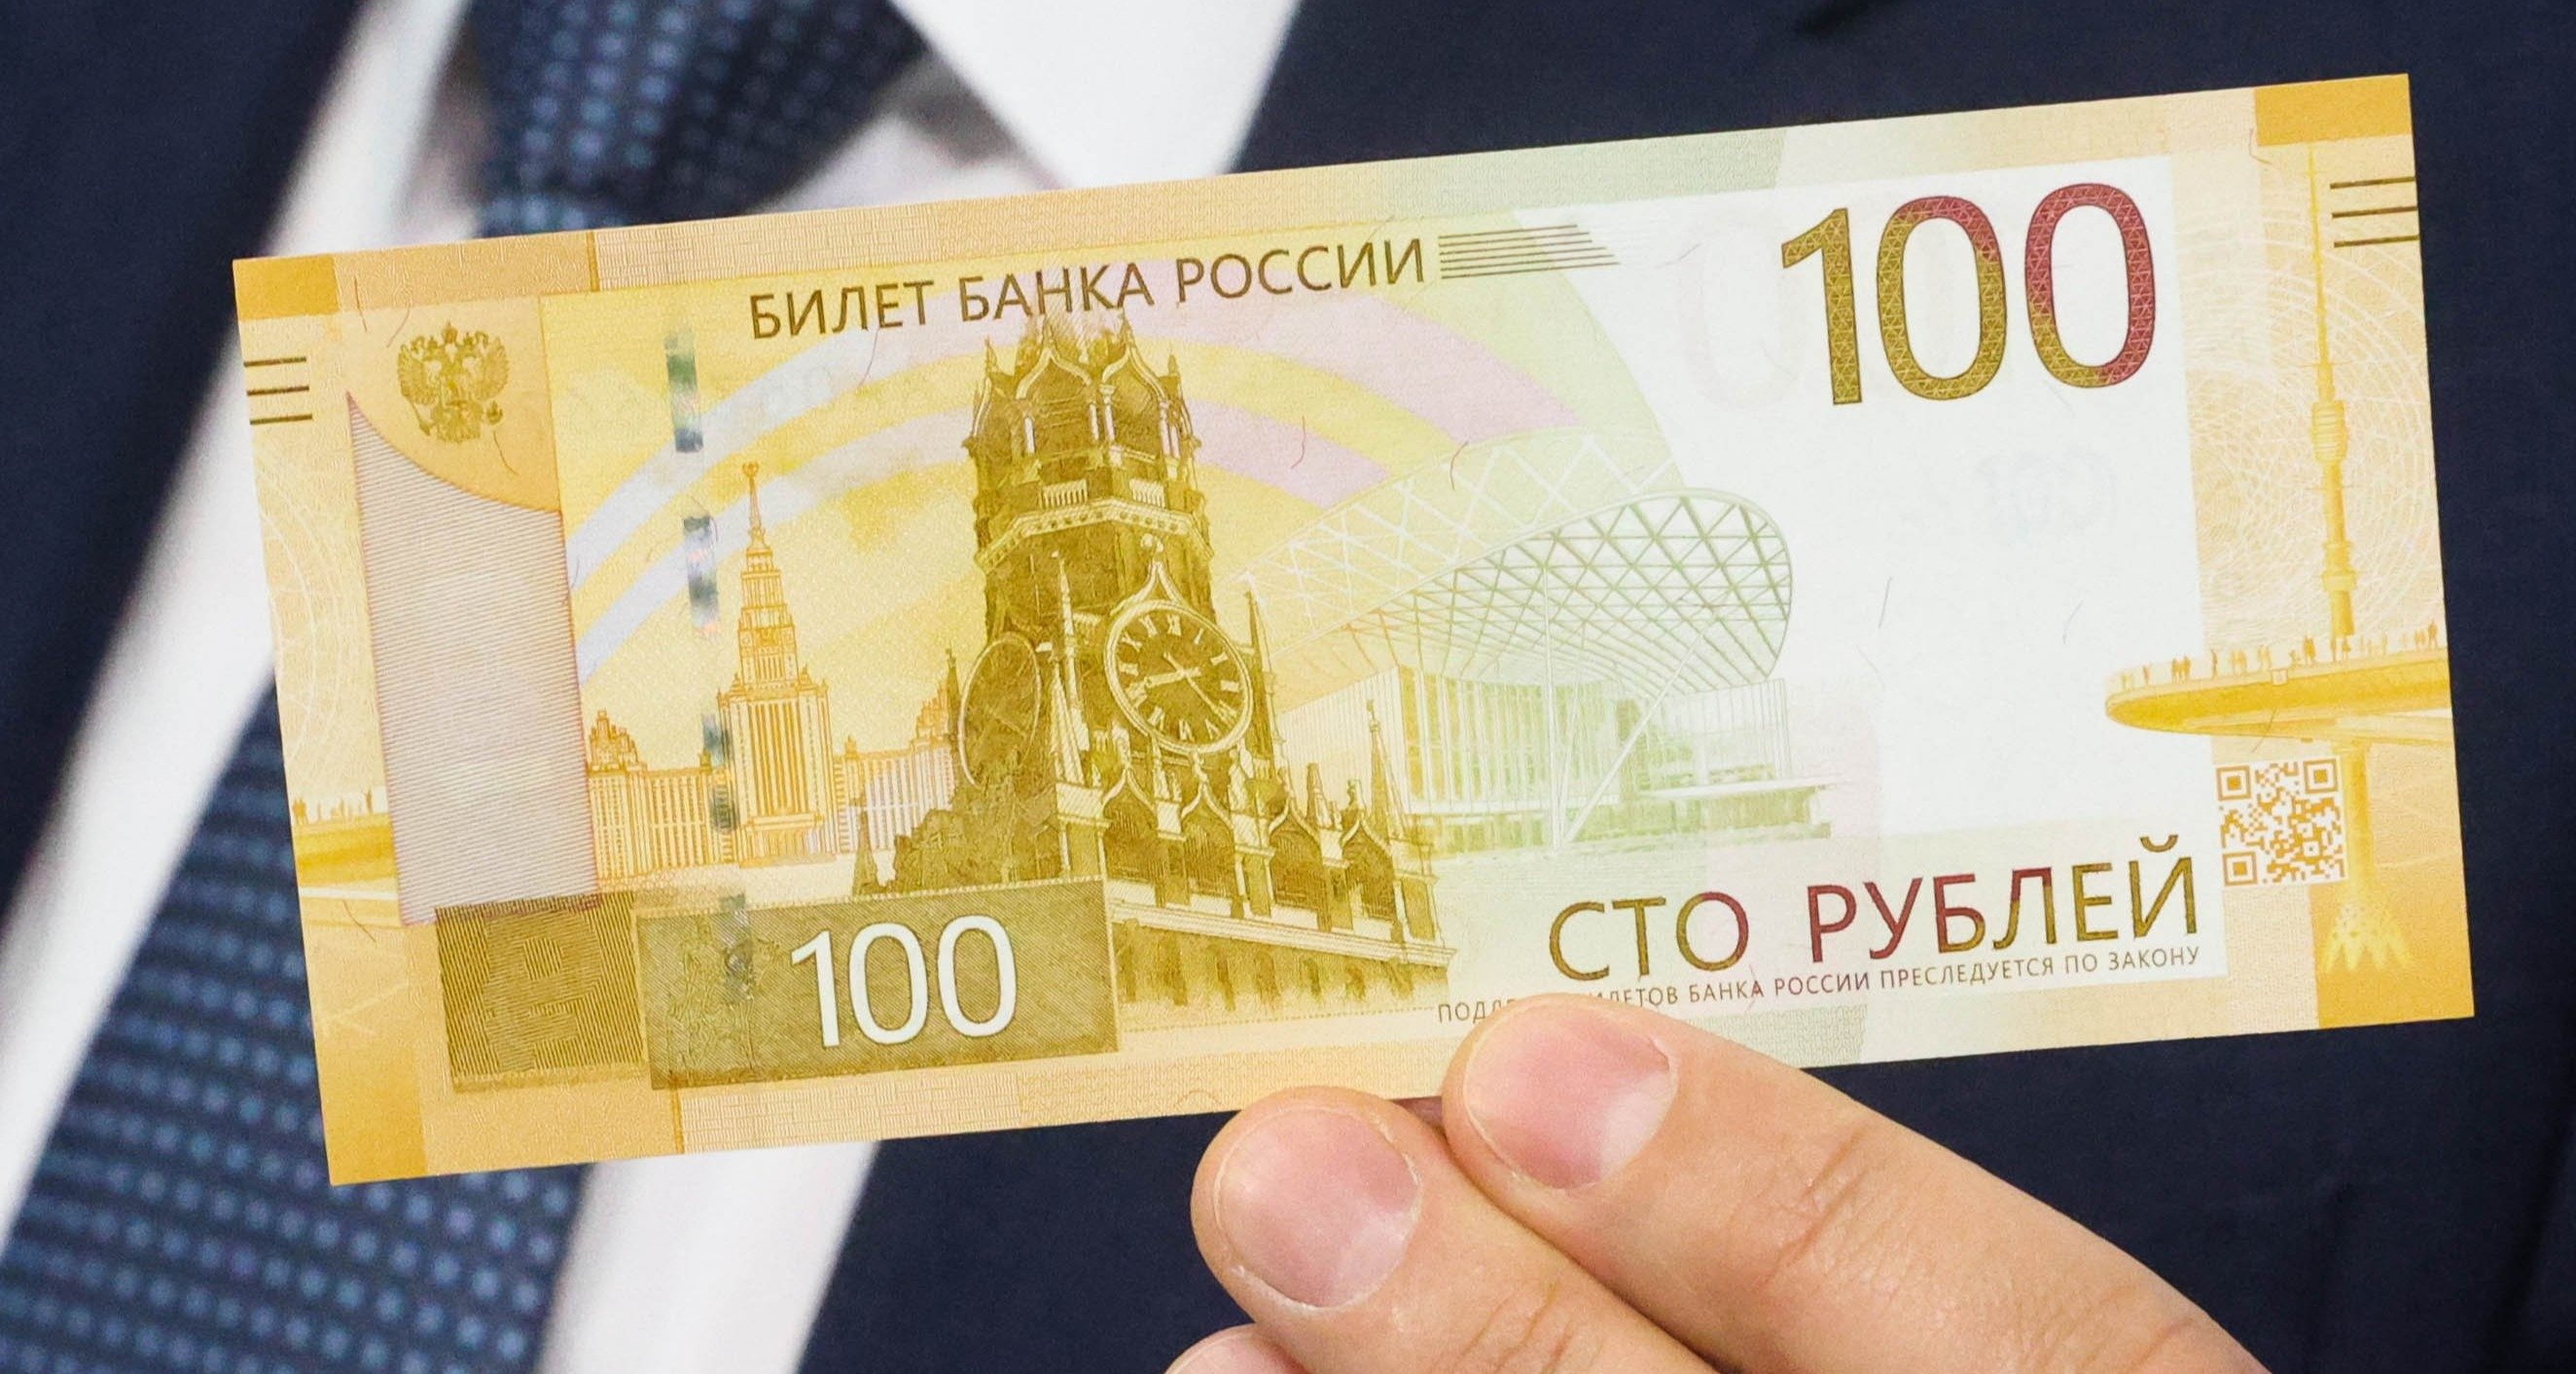 «Тайный знак»: что зашифровано на новой 100-рублевой купюре